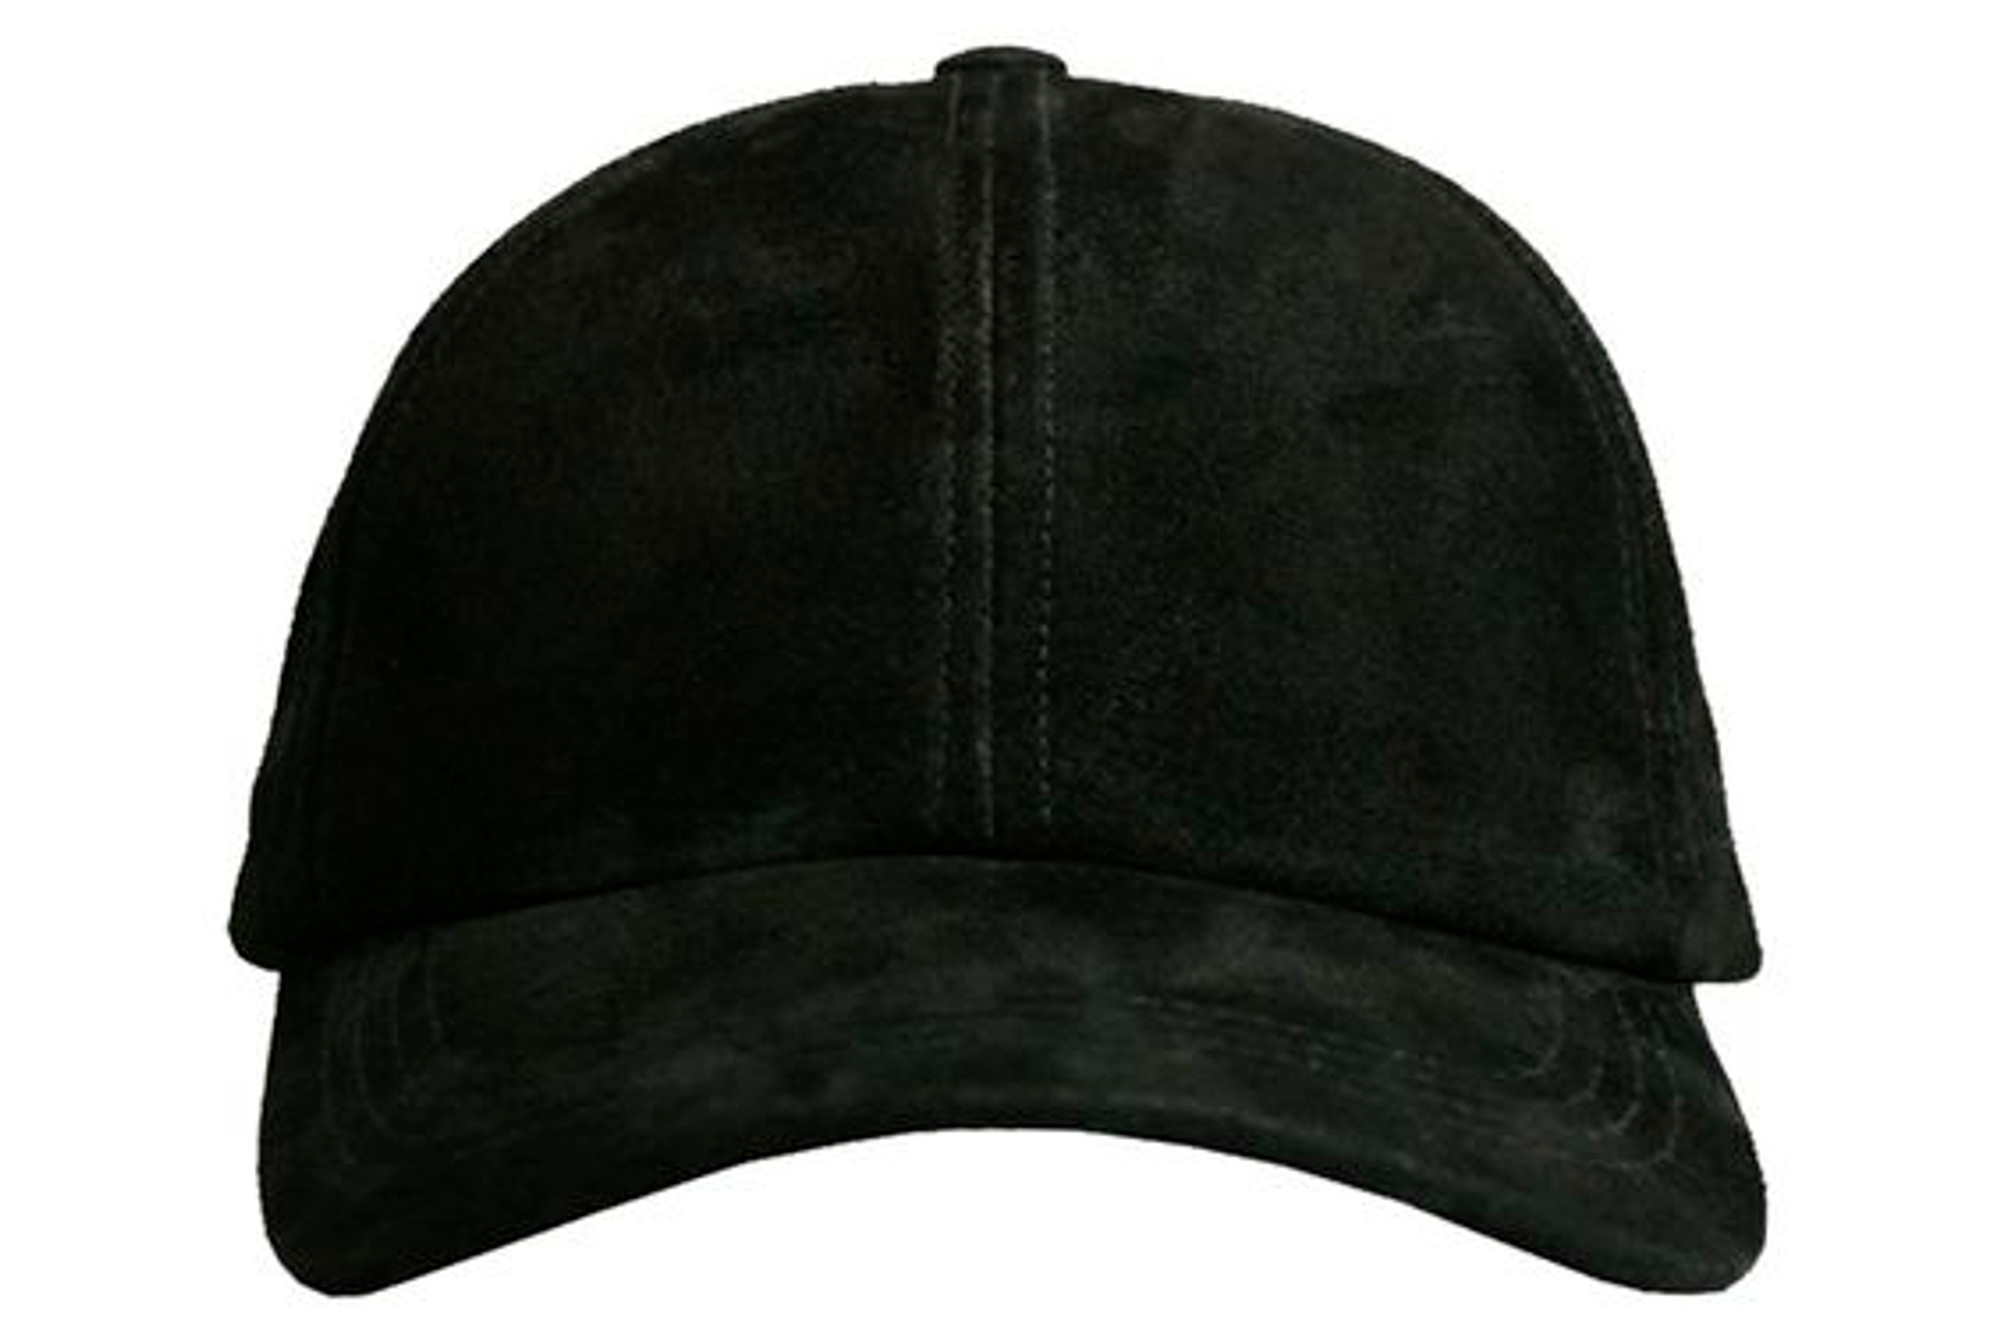 LEATHER CAP - Black